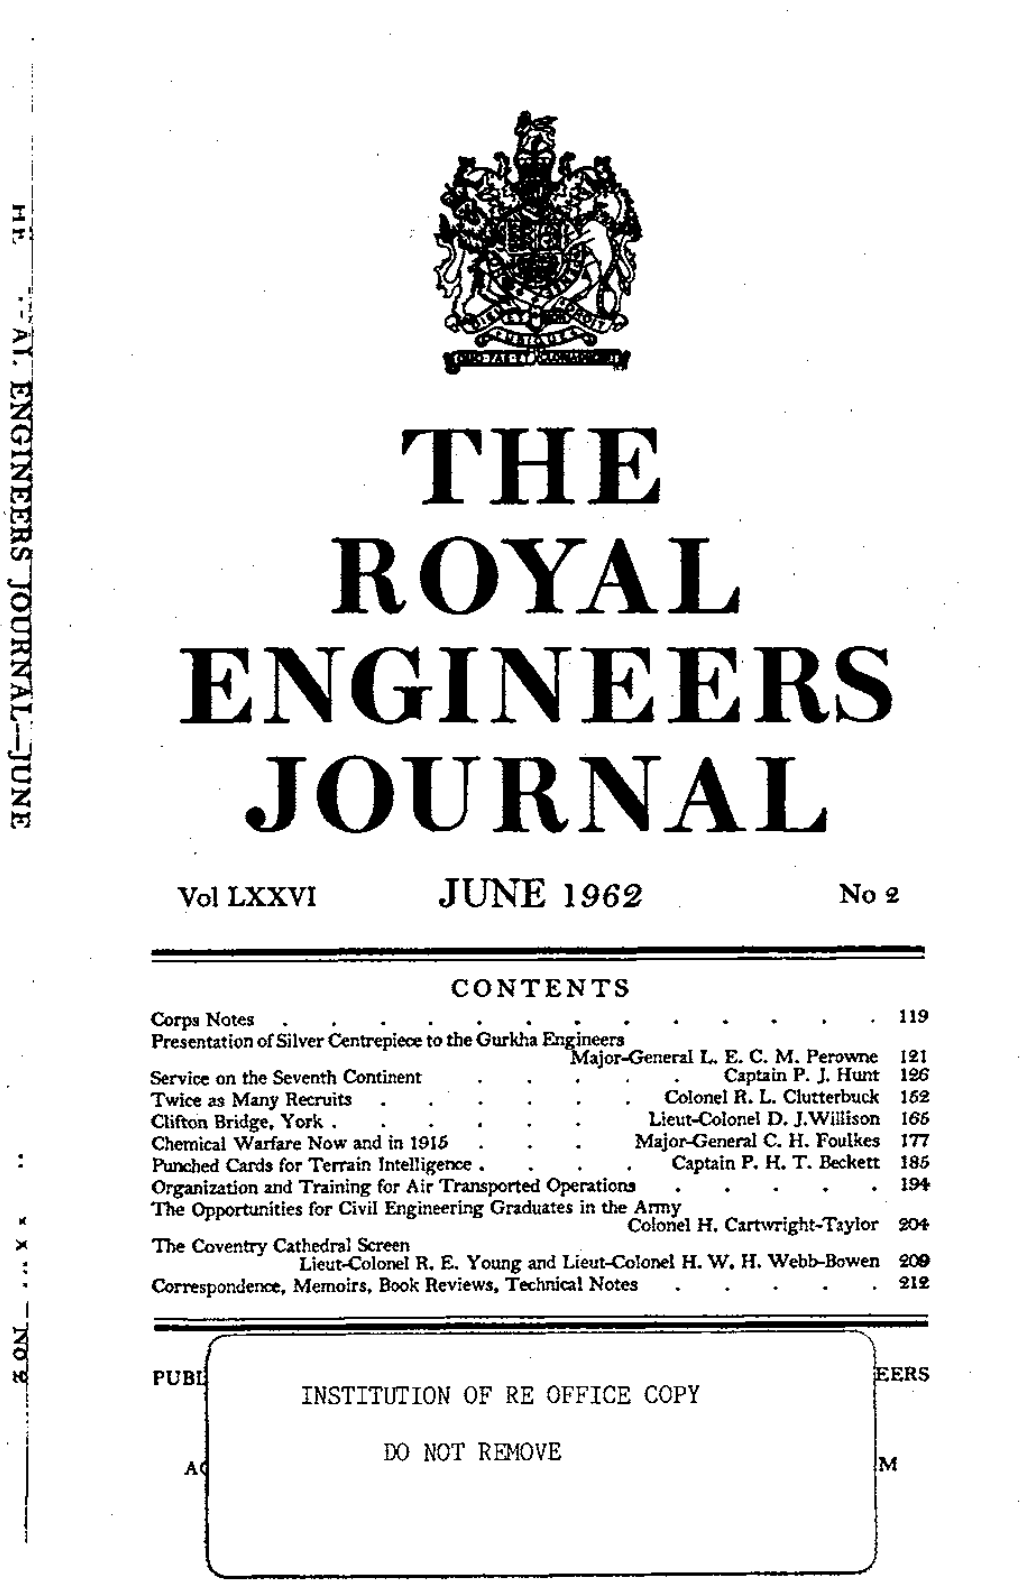 Engineers -Journal